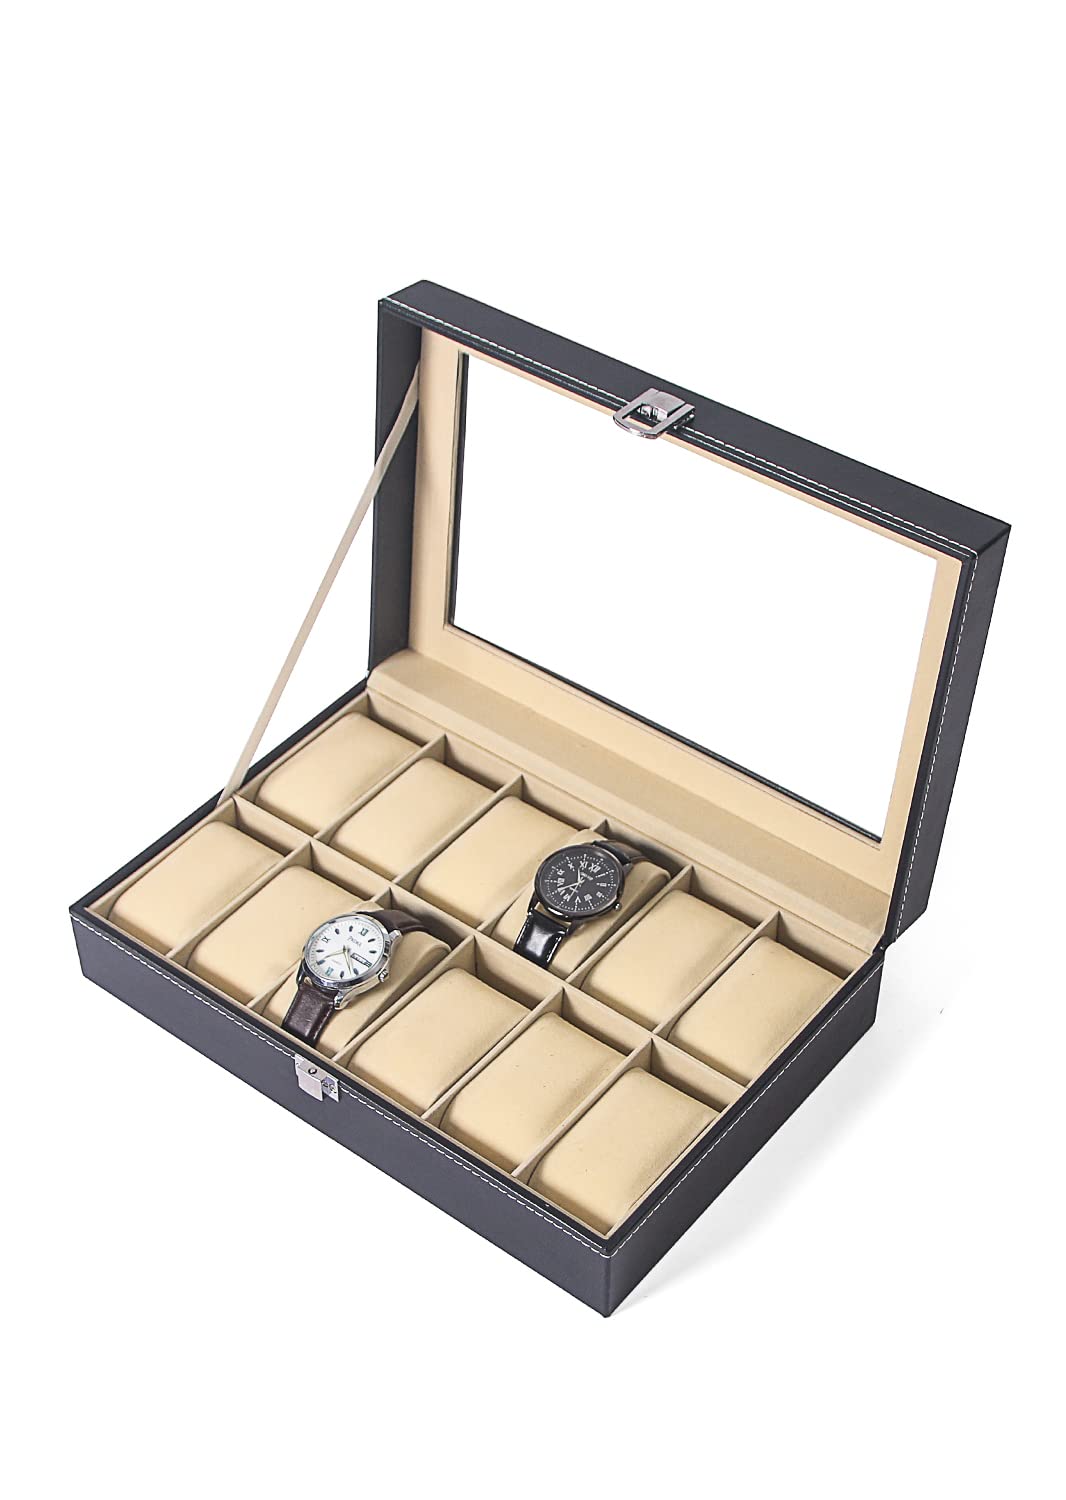 Ausalivan Watch Case,Watch Holder Organizer Box,12 Grid Watch Storage Display Tray, Black Jewelry Travel Box For Men